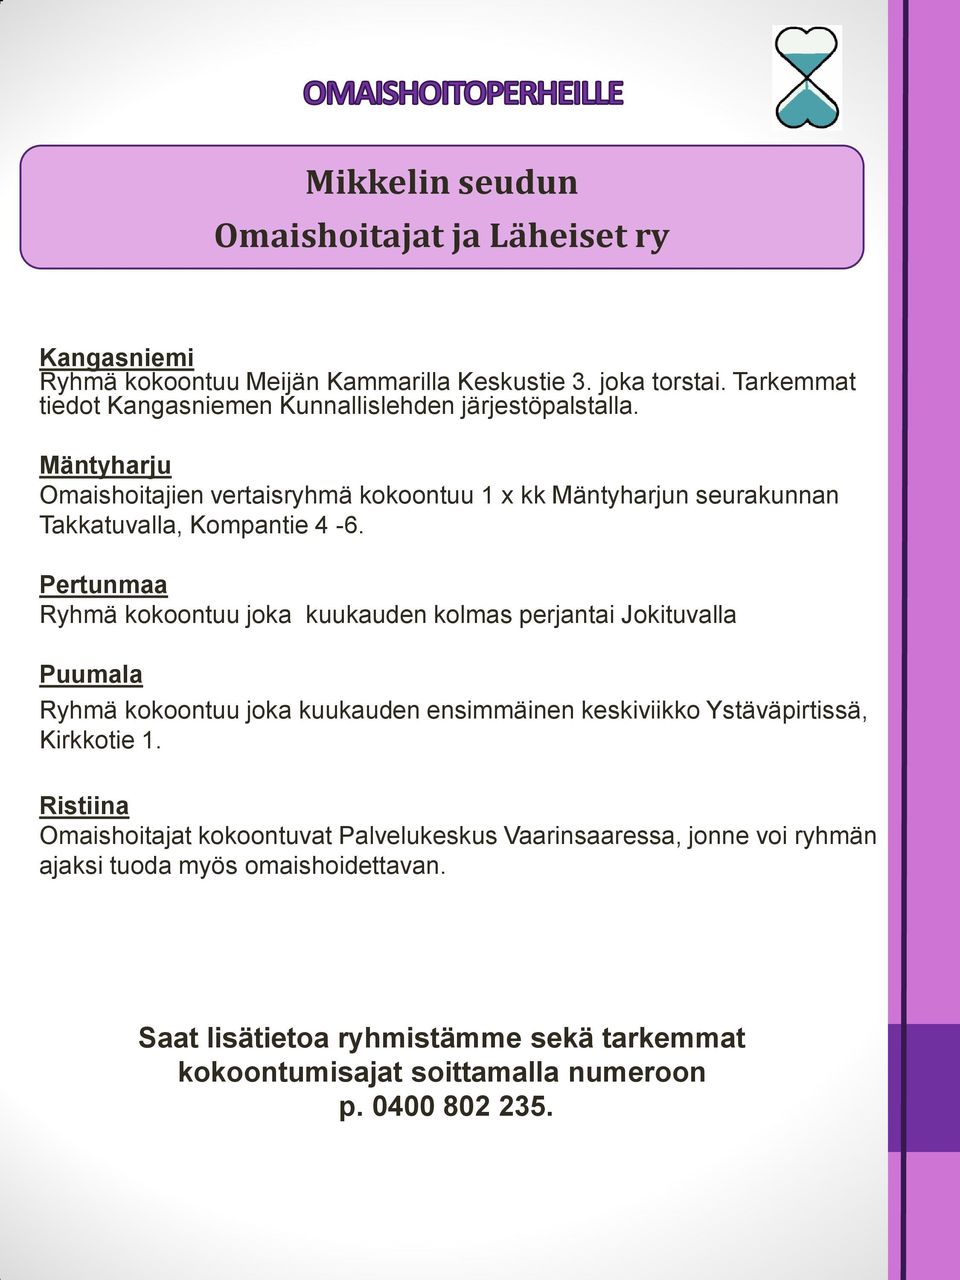 Mäntyharju Omaishoitajien vertaisryhmä kokoontuu 1 x kk Mäntyharjun seurakunnan Takkatuvalla, Kompantie 4-6.